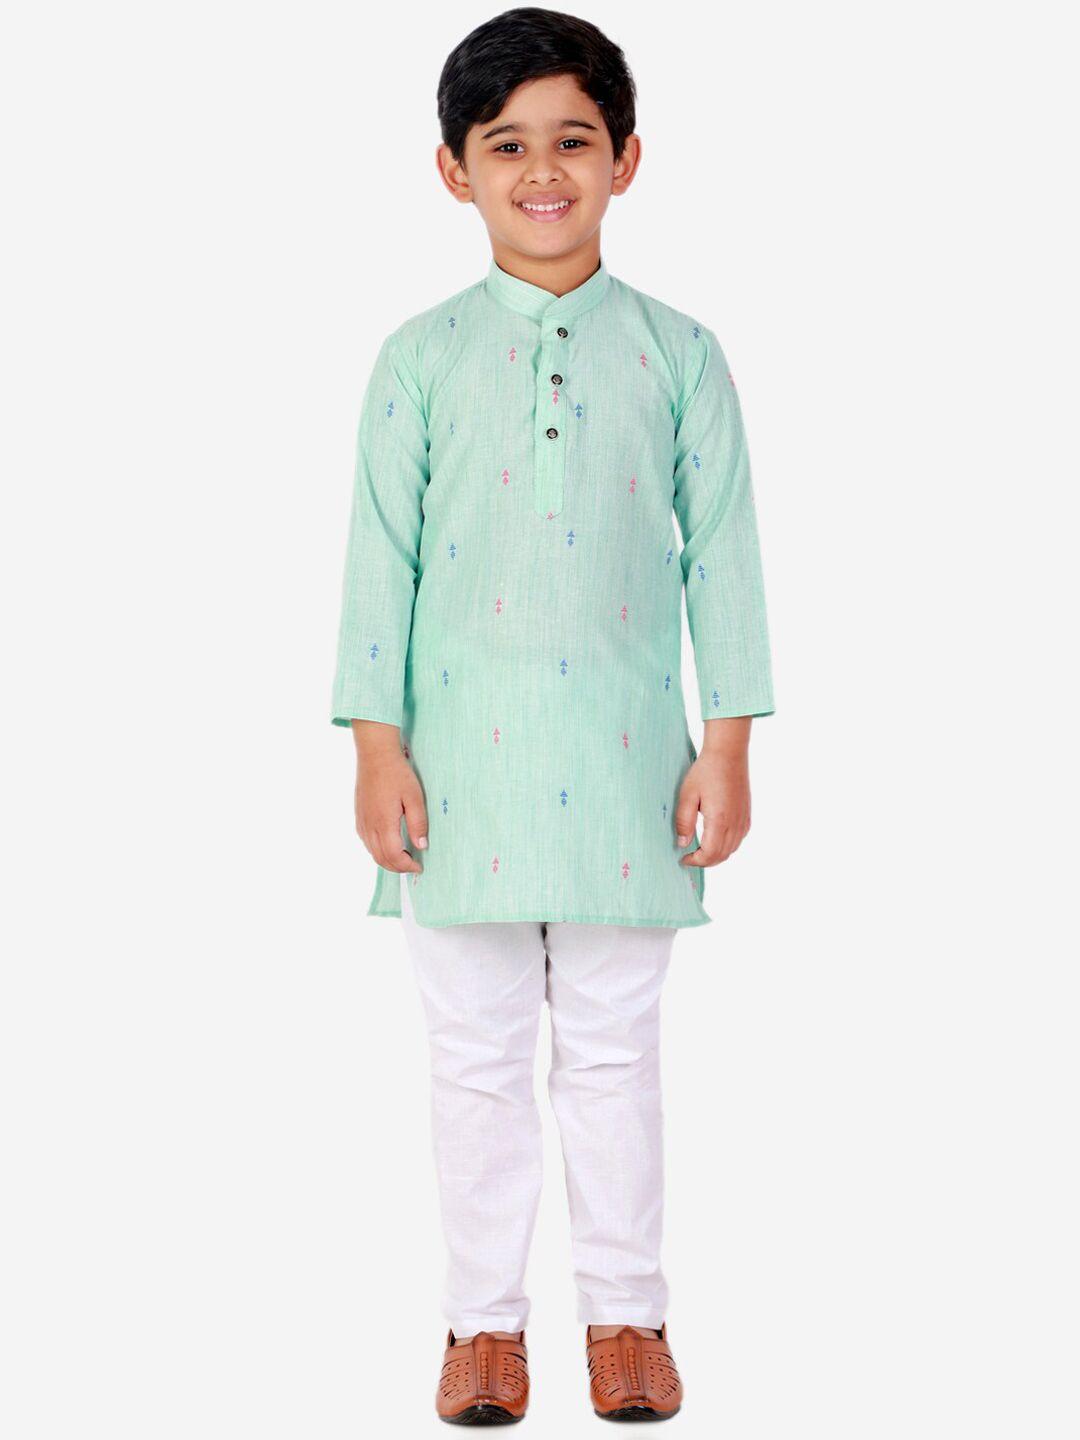 pro-ethic style developer boys ethnic motifs printed kurta with pyjamas